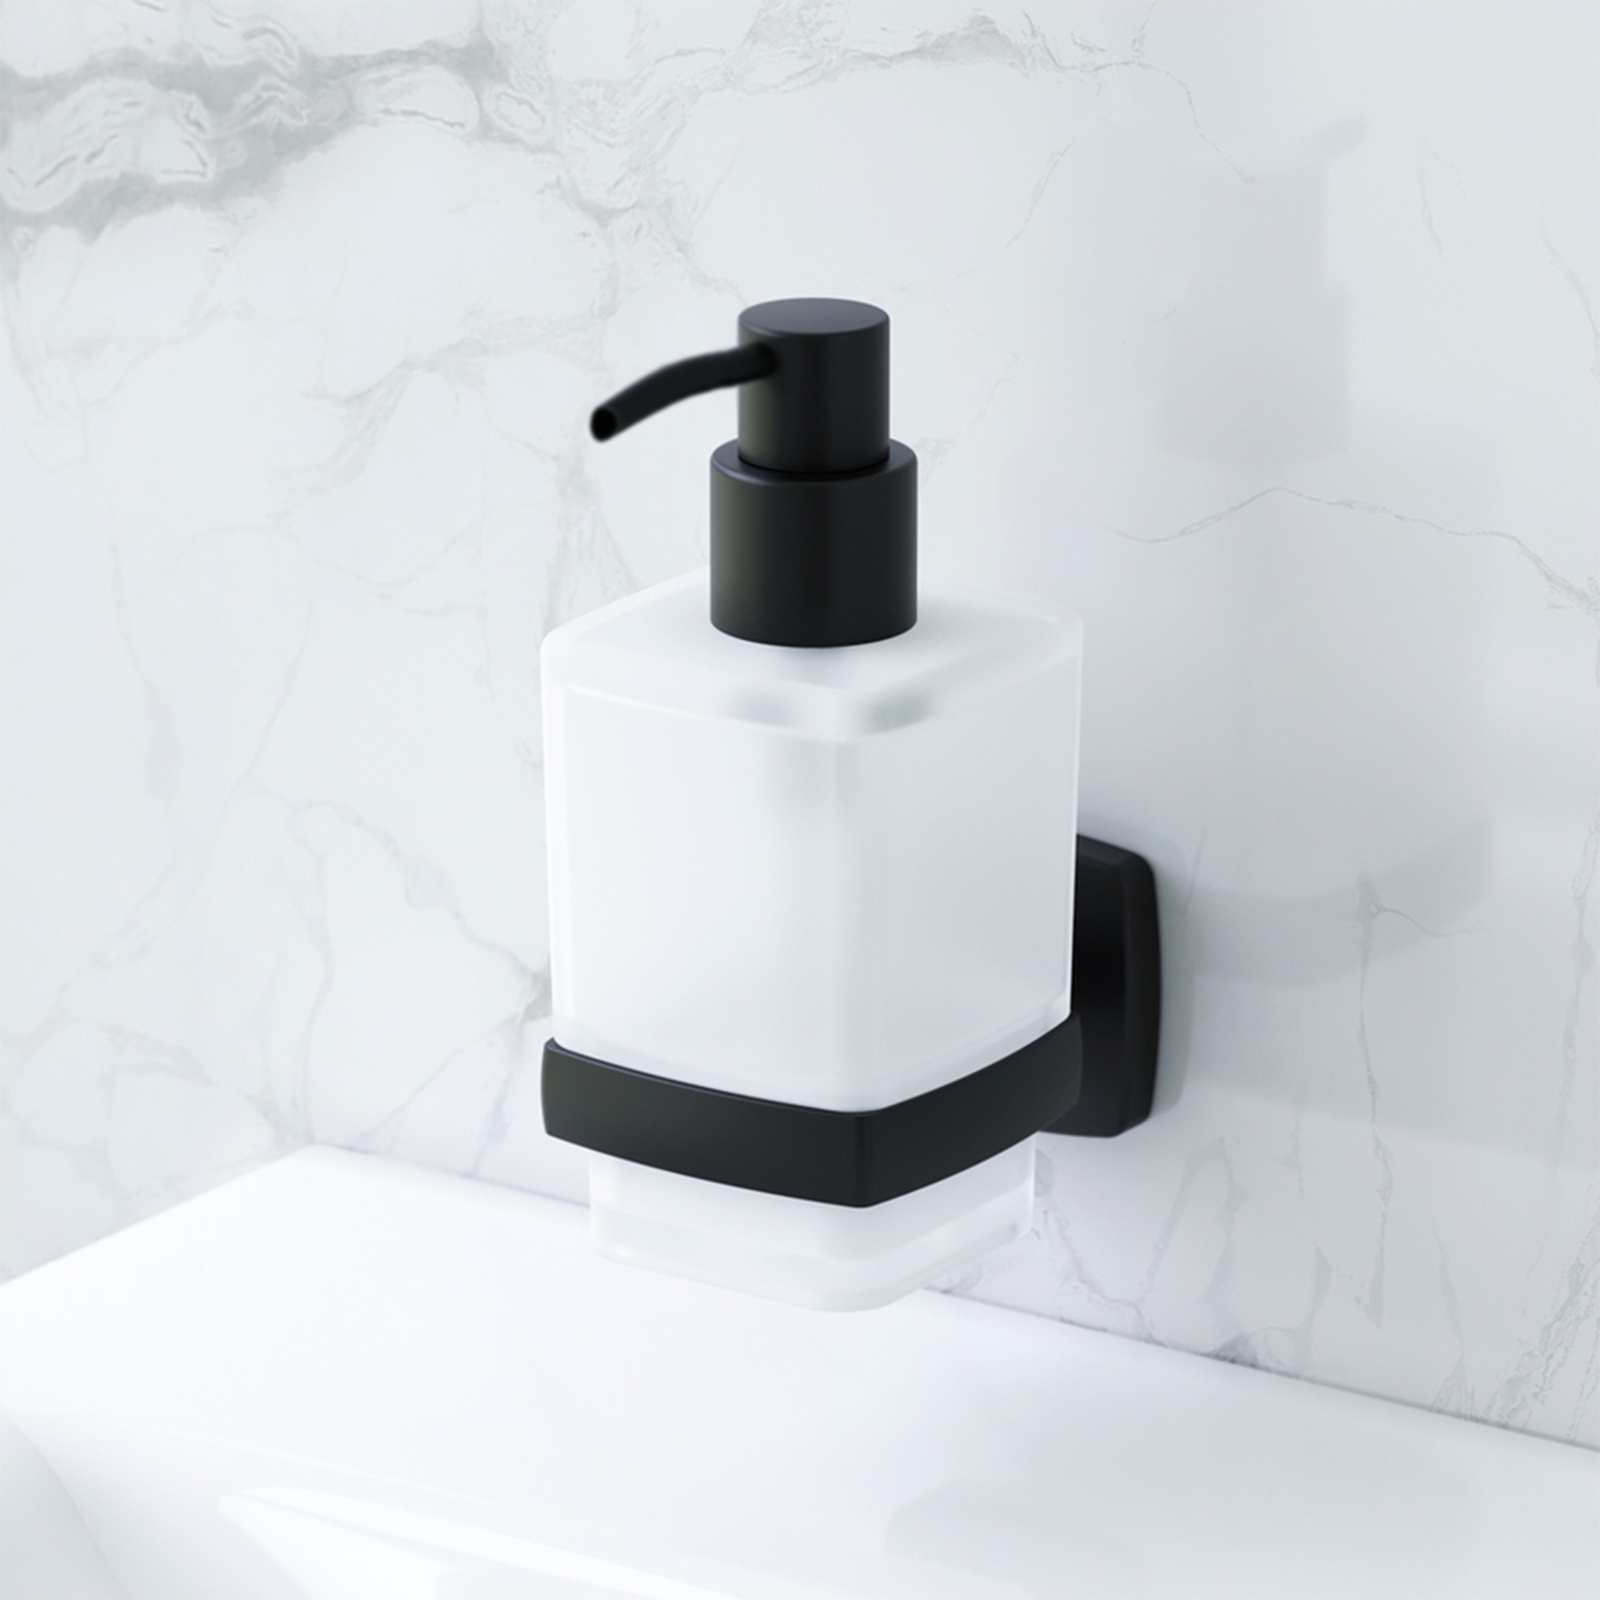 Distributeur de savon en verre satiné Stelvio, support en acier inoxydable noir mat 6,4x10,6 cm 15,8h